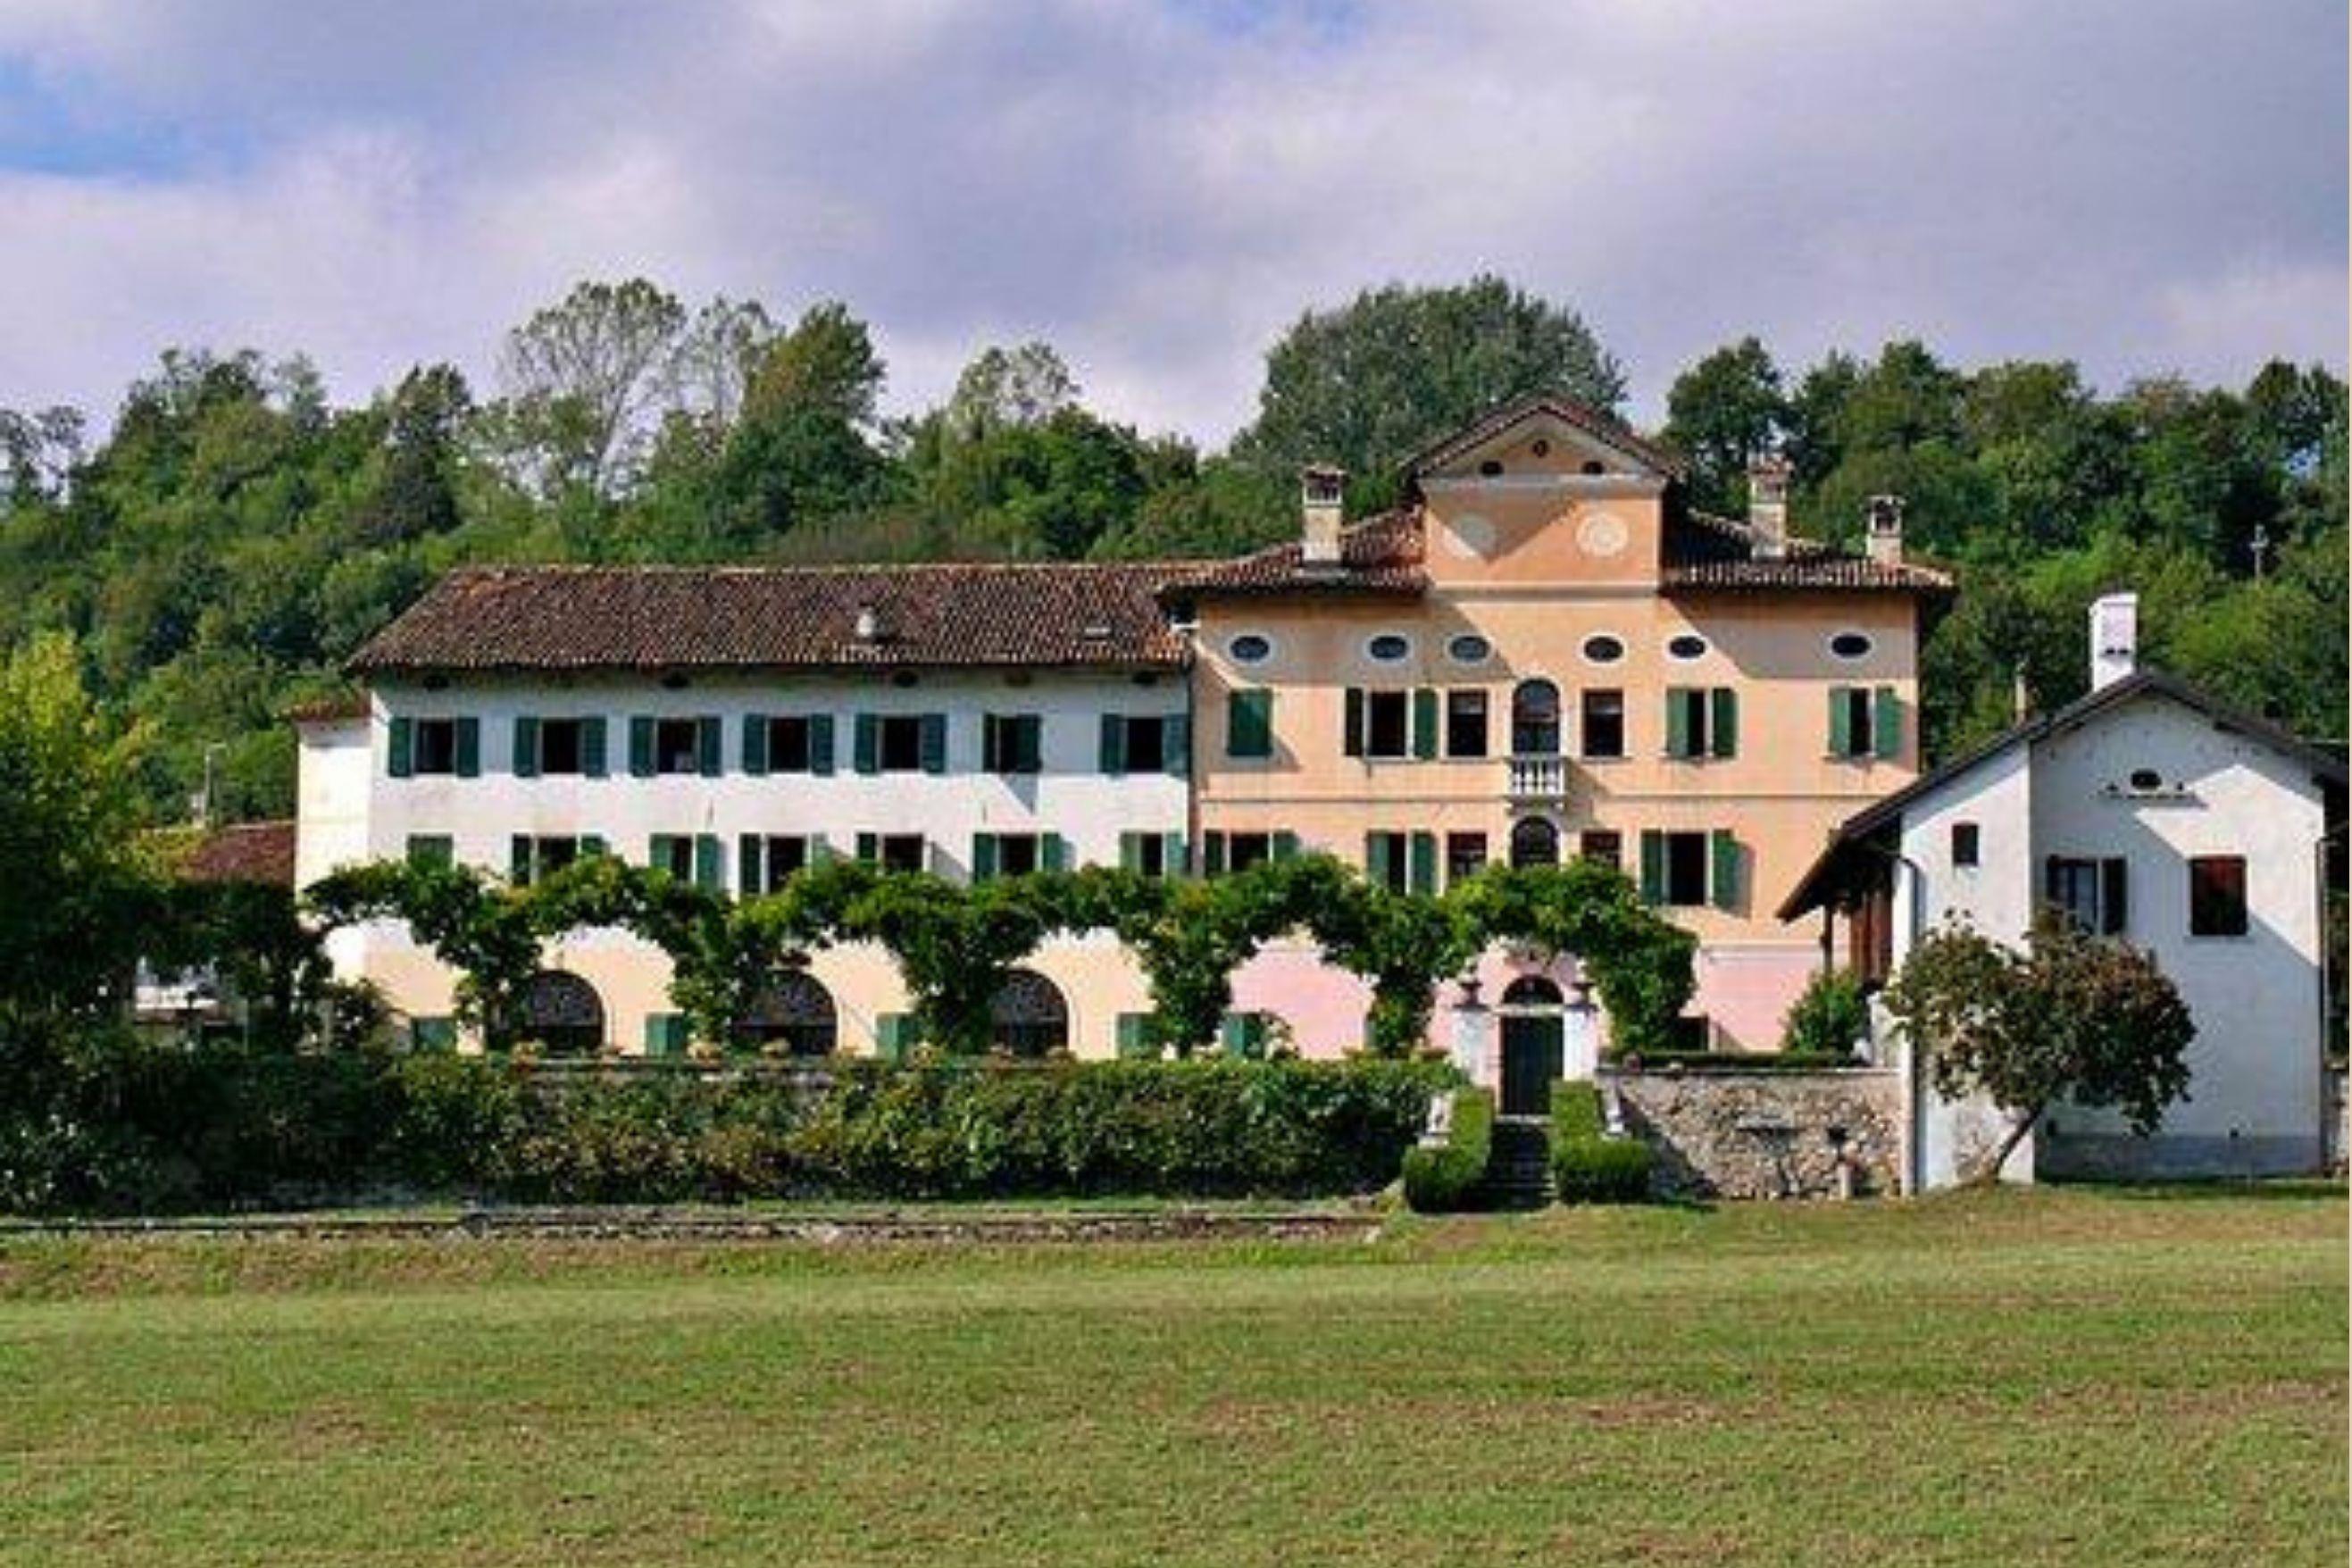 Villa Azzoni degli Avogadro